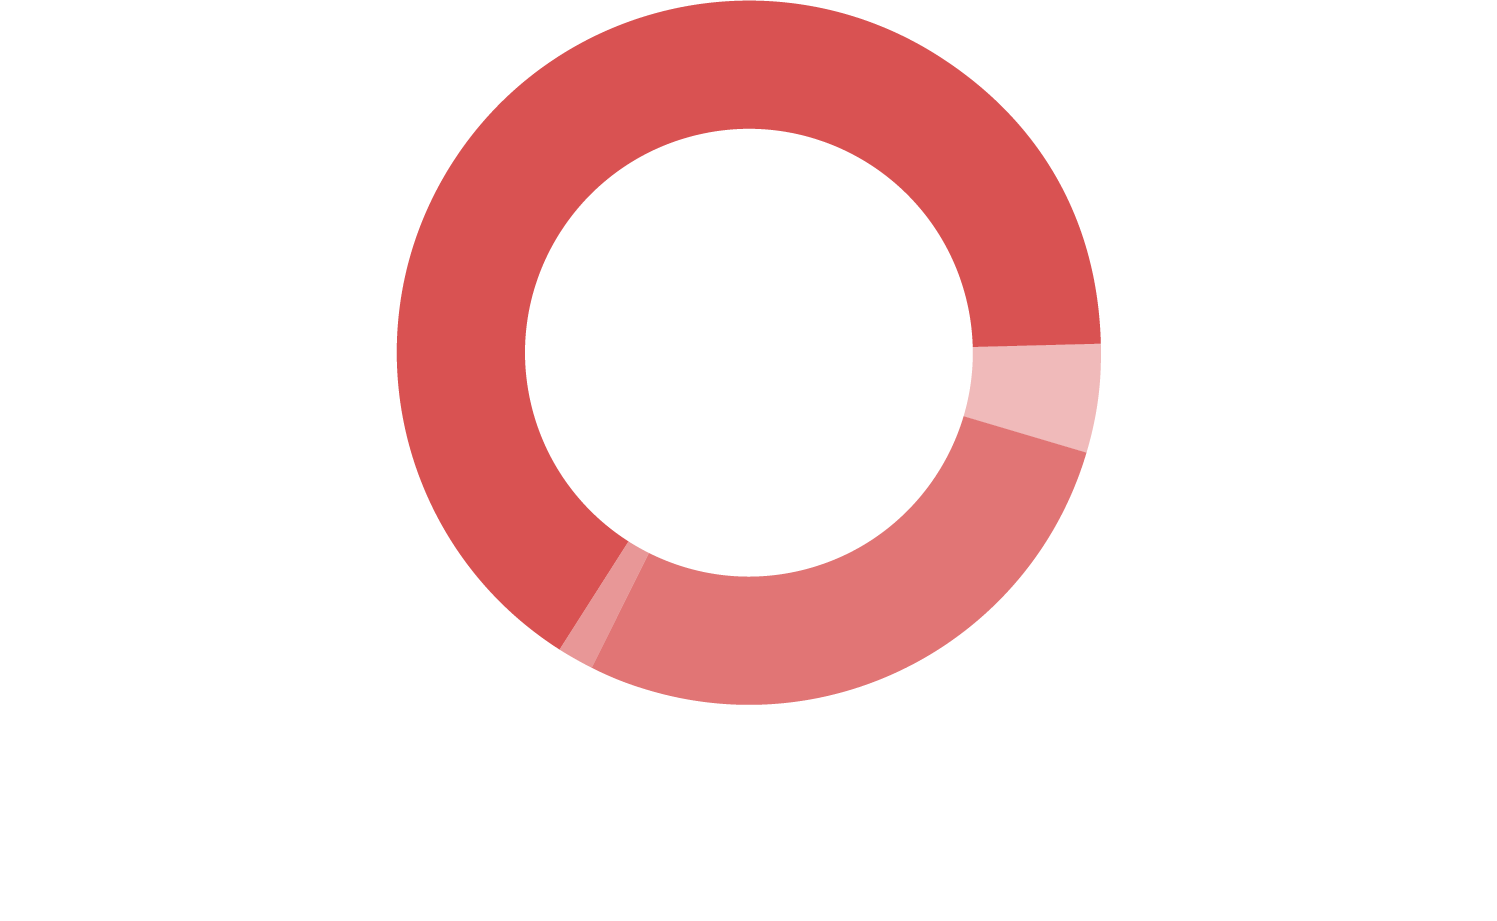 Gráfico em pizza com as informações de fontes de financiamento do InternetLab em 2015. Sendo 65,8% fundações e organizações do terceiro setor internacionais, 1,3% de pessoas físicas, 27,9% do setor privado e 1,3% de pessoas físicas.